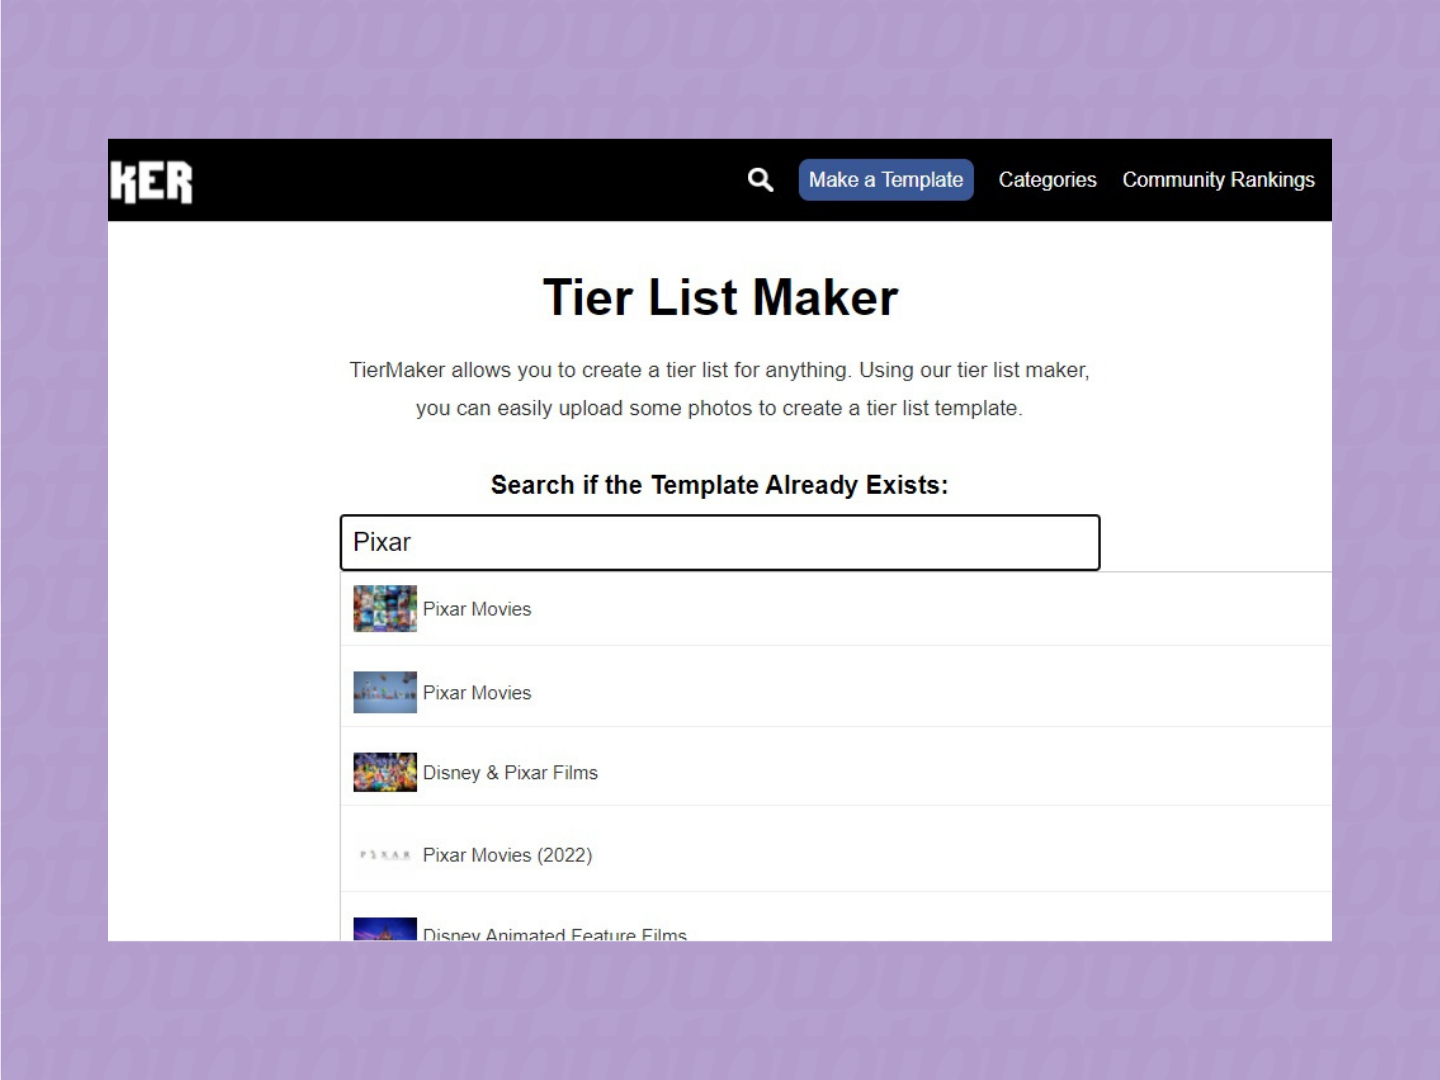 Como criar uma tier list online / TierMaker / Reprodução